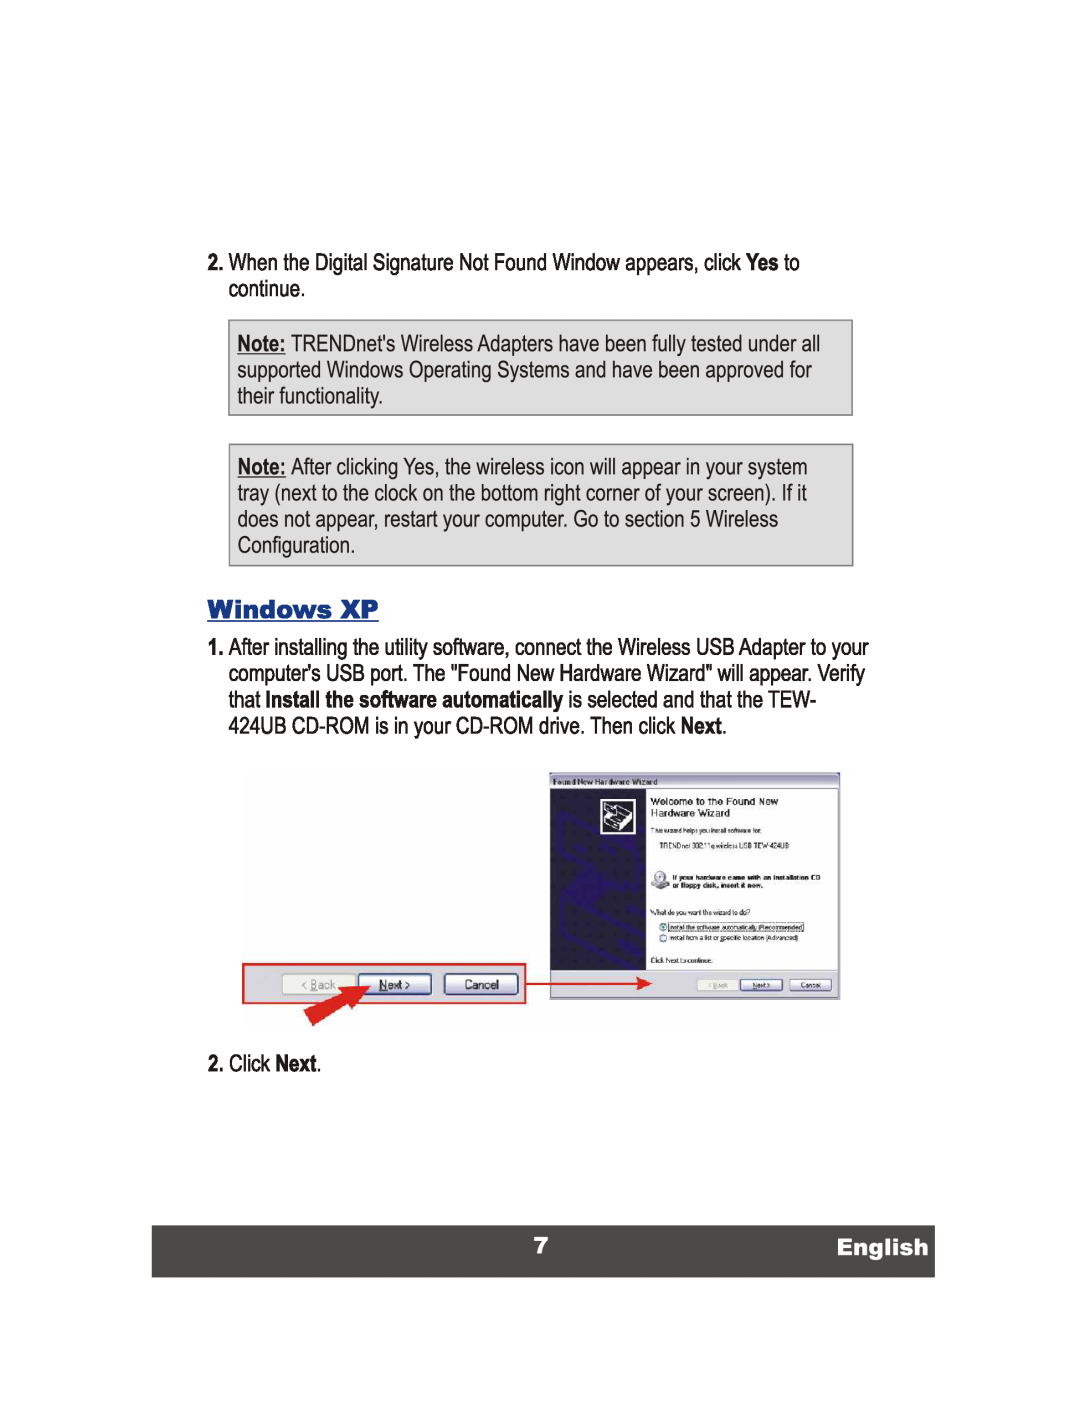 TRENDnet Wireless USB 2.0 Adaptor, TEW-424UB manual 